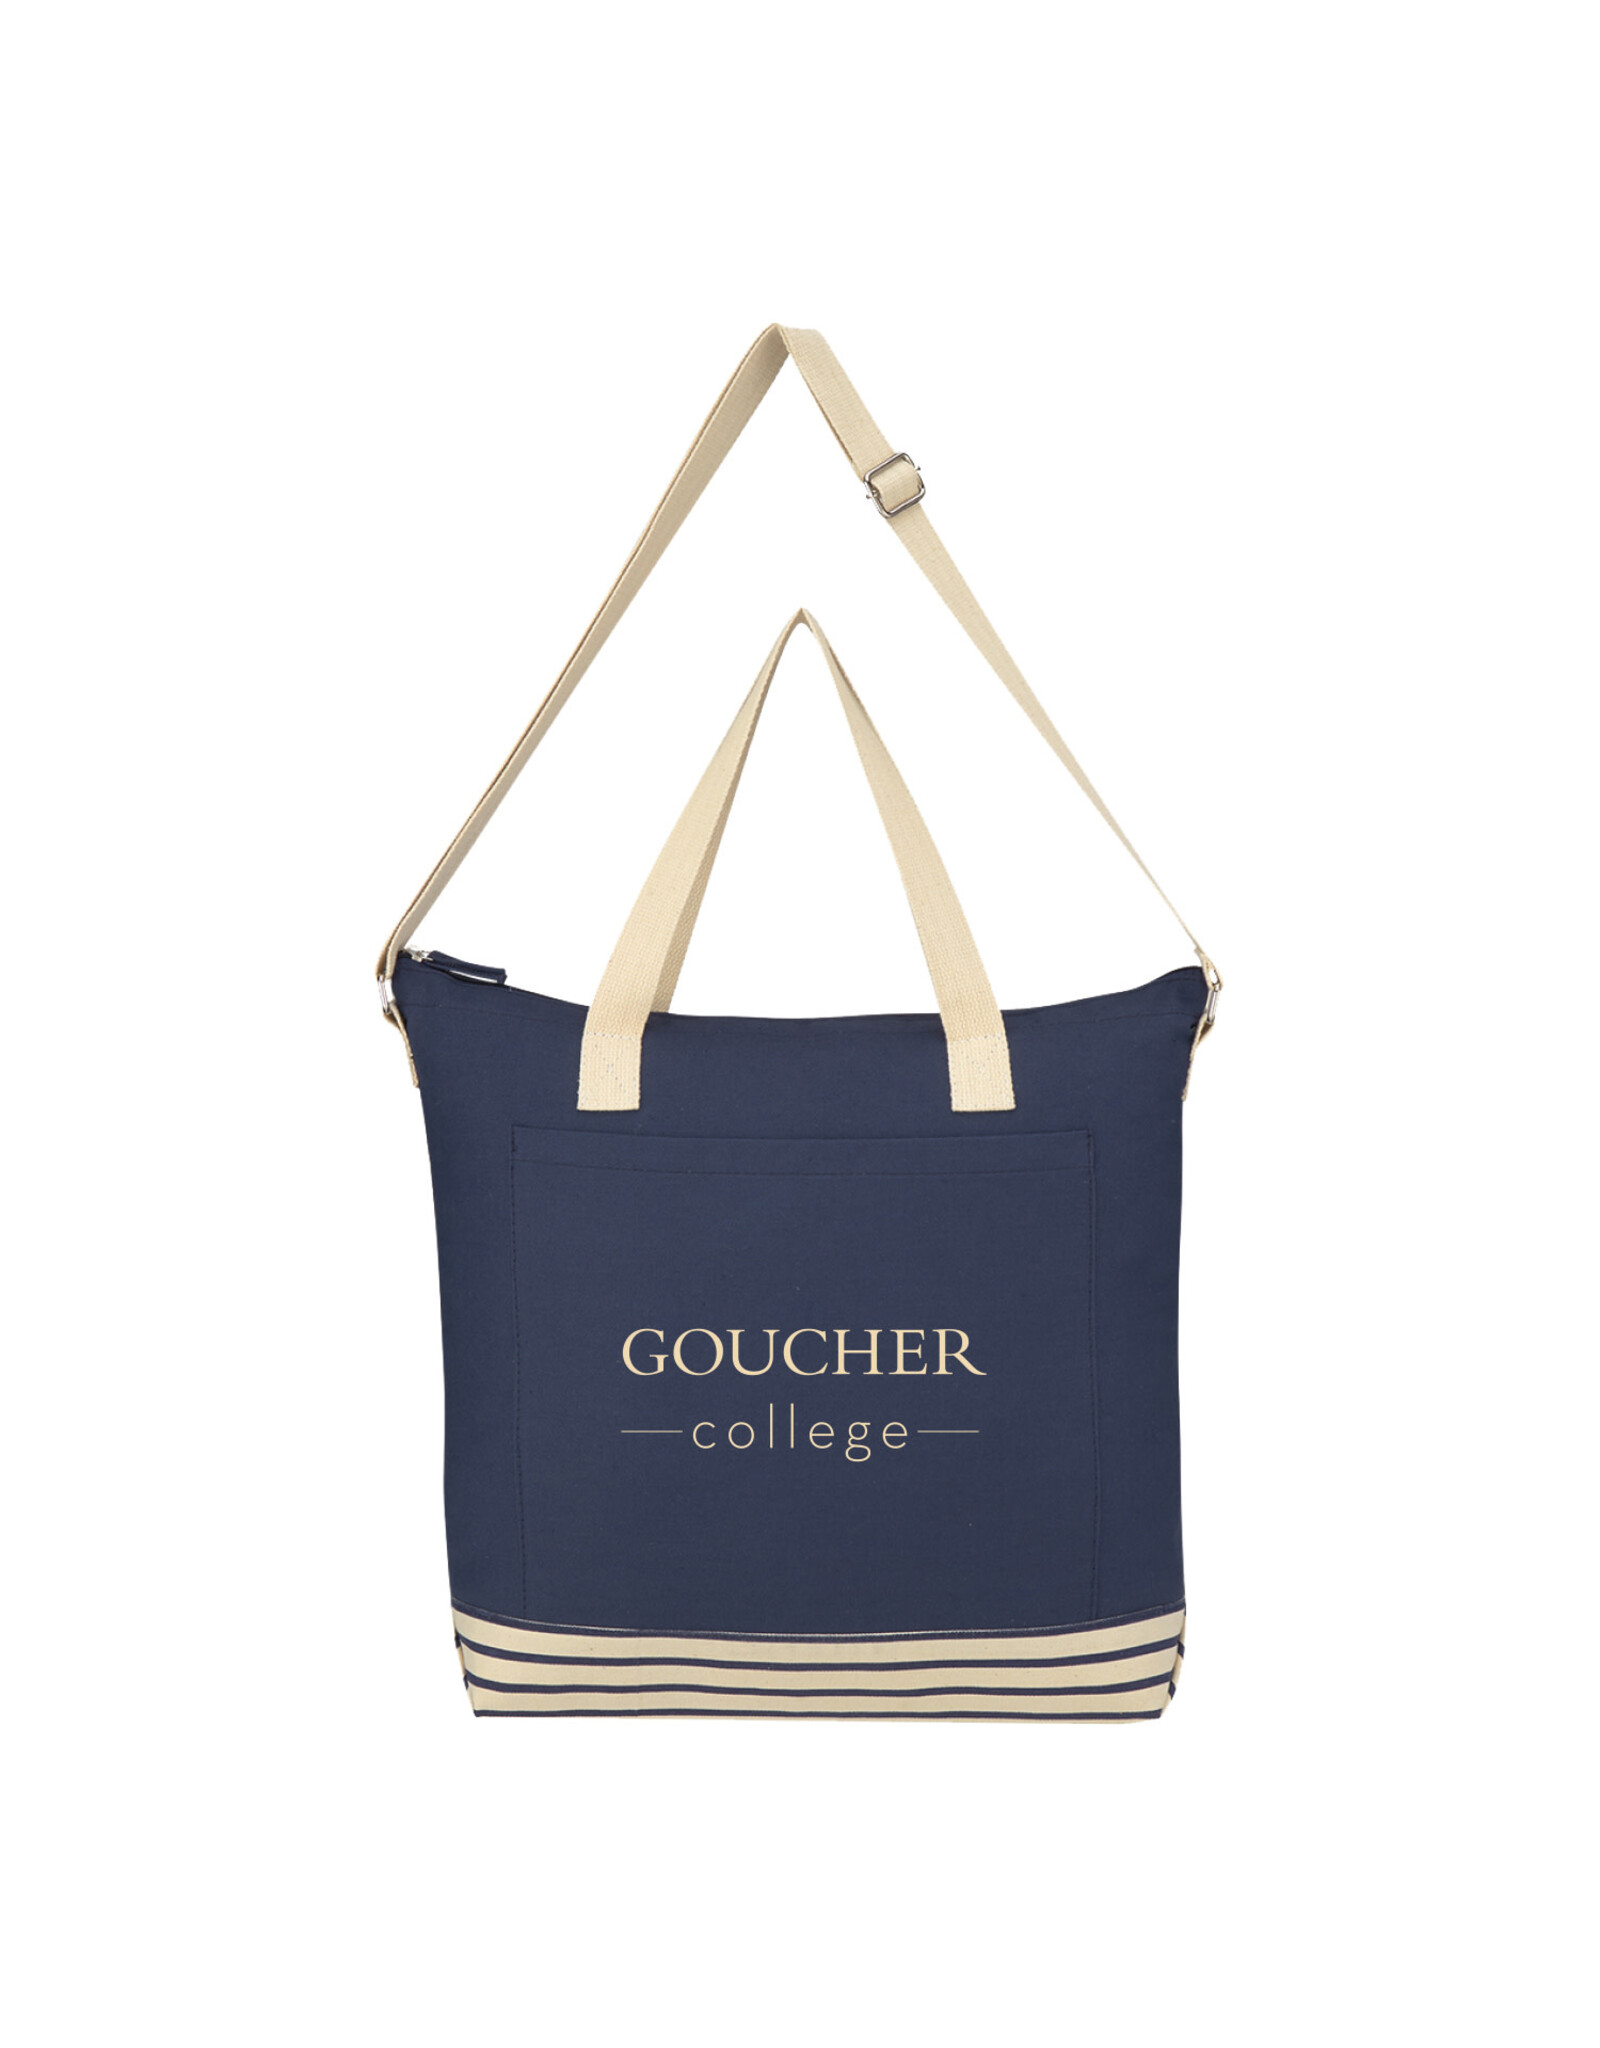 Jardine Bottom Line Tote "Goucher College"